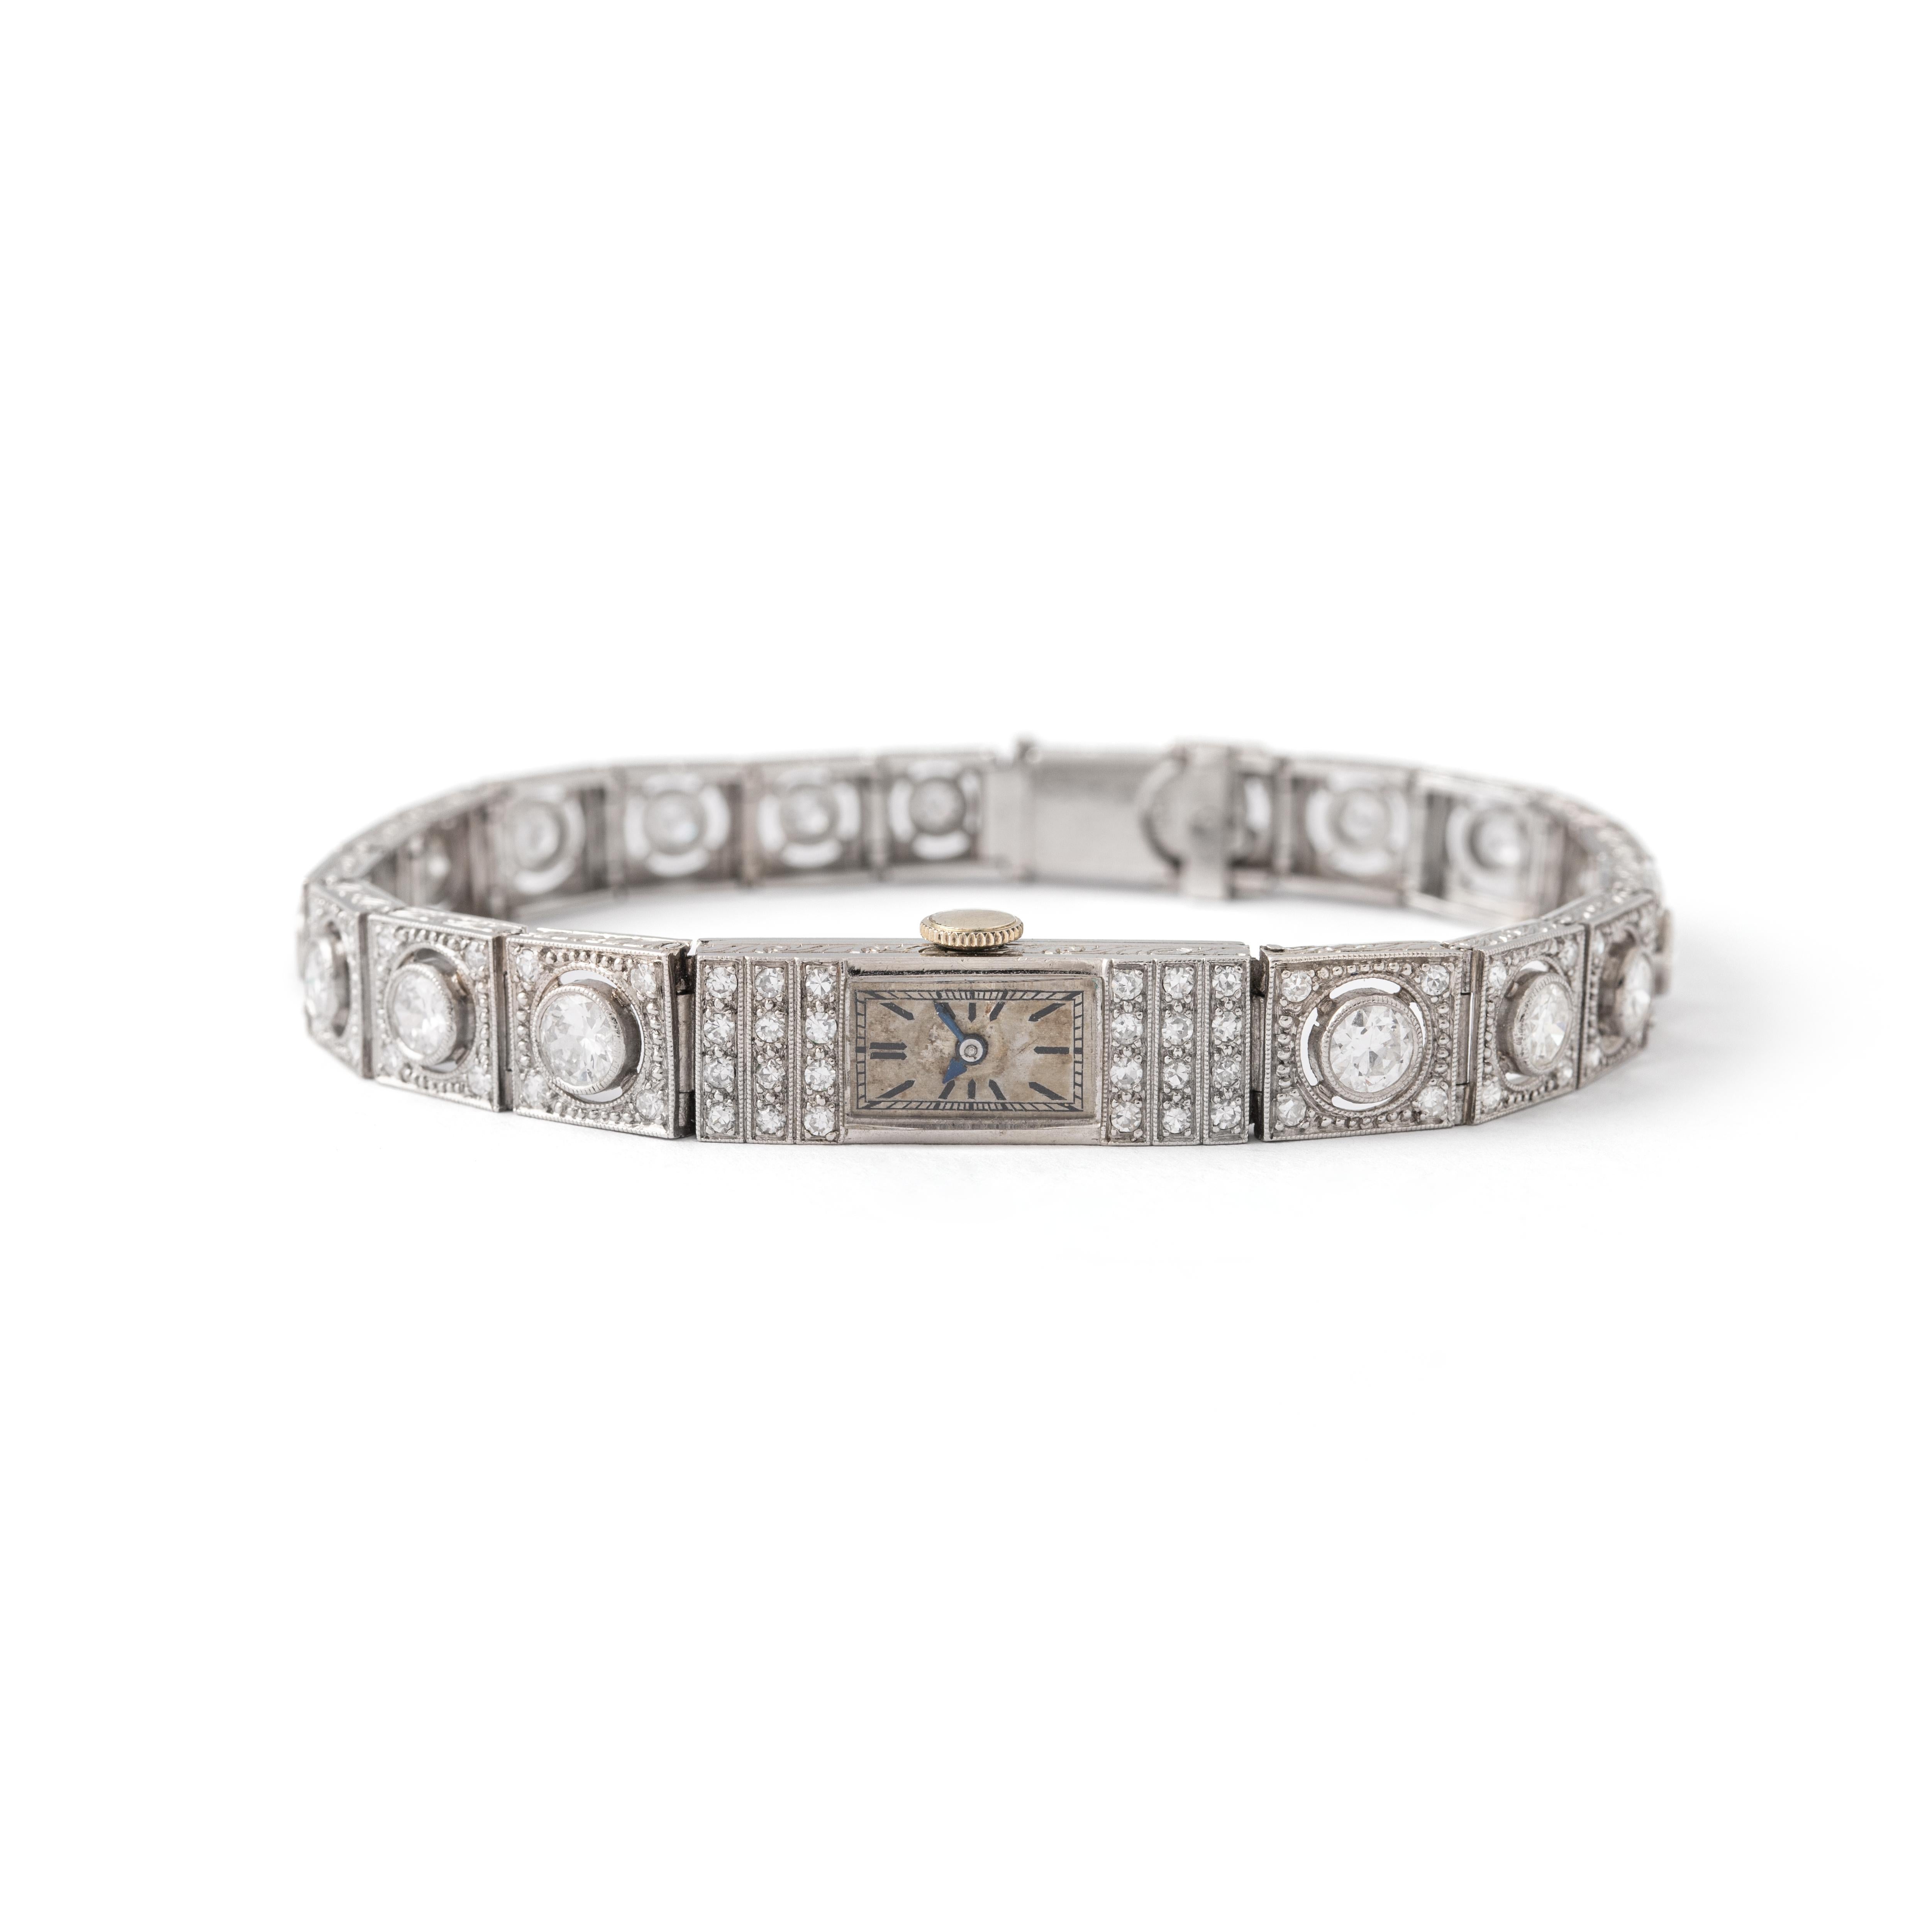 Montre-bracelet Art déco à diamants.
Circa 1930.

Longueur totale : environ 17.70 centimètres.
Largeur totale : environ 0.80 centimètres.

Dimensions du boîtier : 2,20 centimètres x 0,80 centimètres.

Poids total : 27,27 grammes.
Nous ne